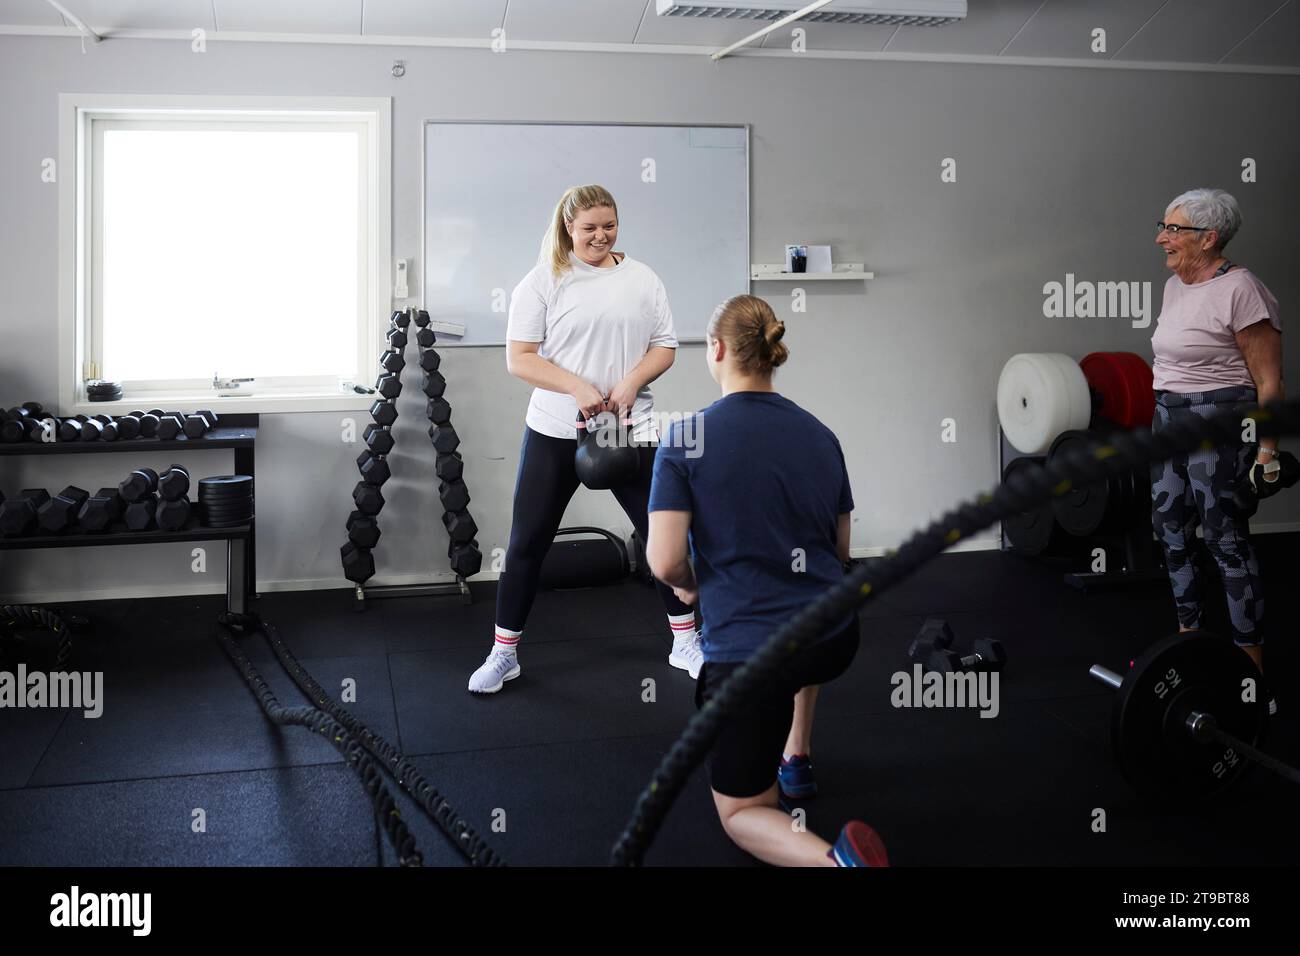 Lächelnde Frau, die mit Kettlebell vor dem Fitnesstrainer im Health Club trainiert Stockfoto